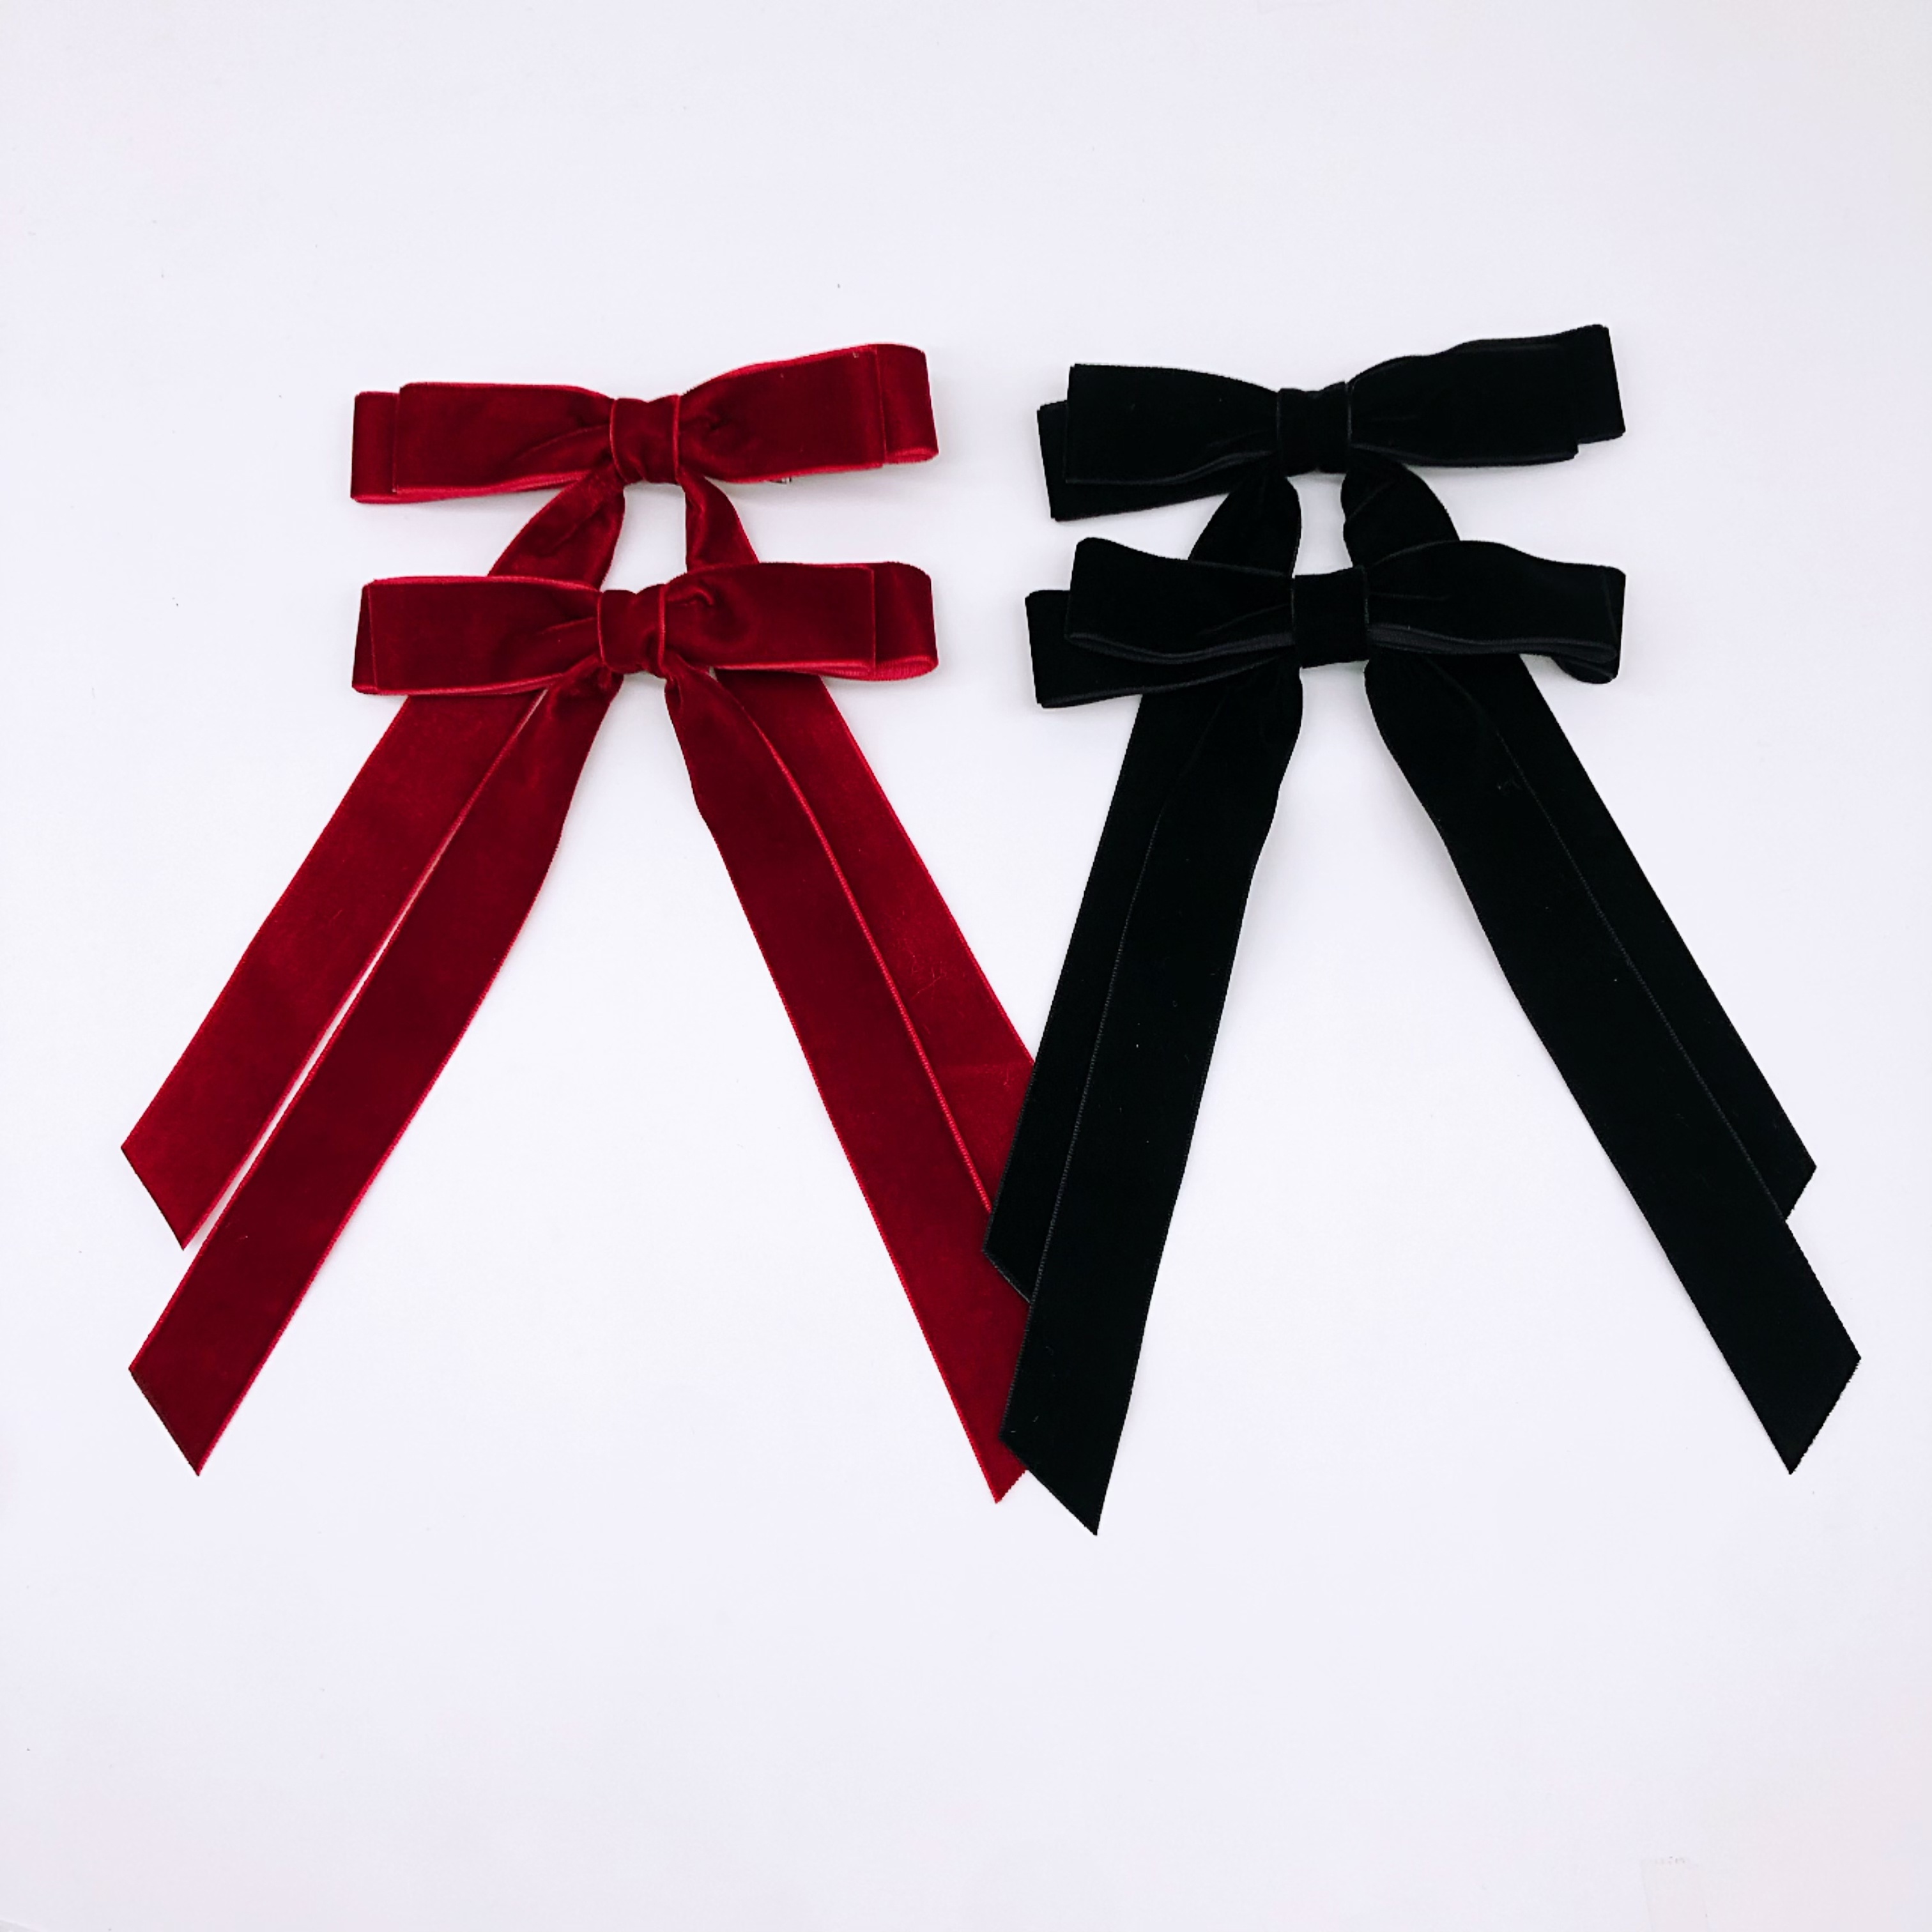 4.92yards Red Golden Velvet Ribbon Wide Edge Ribbon For Diy - Temu